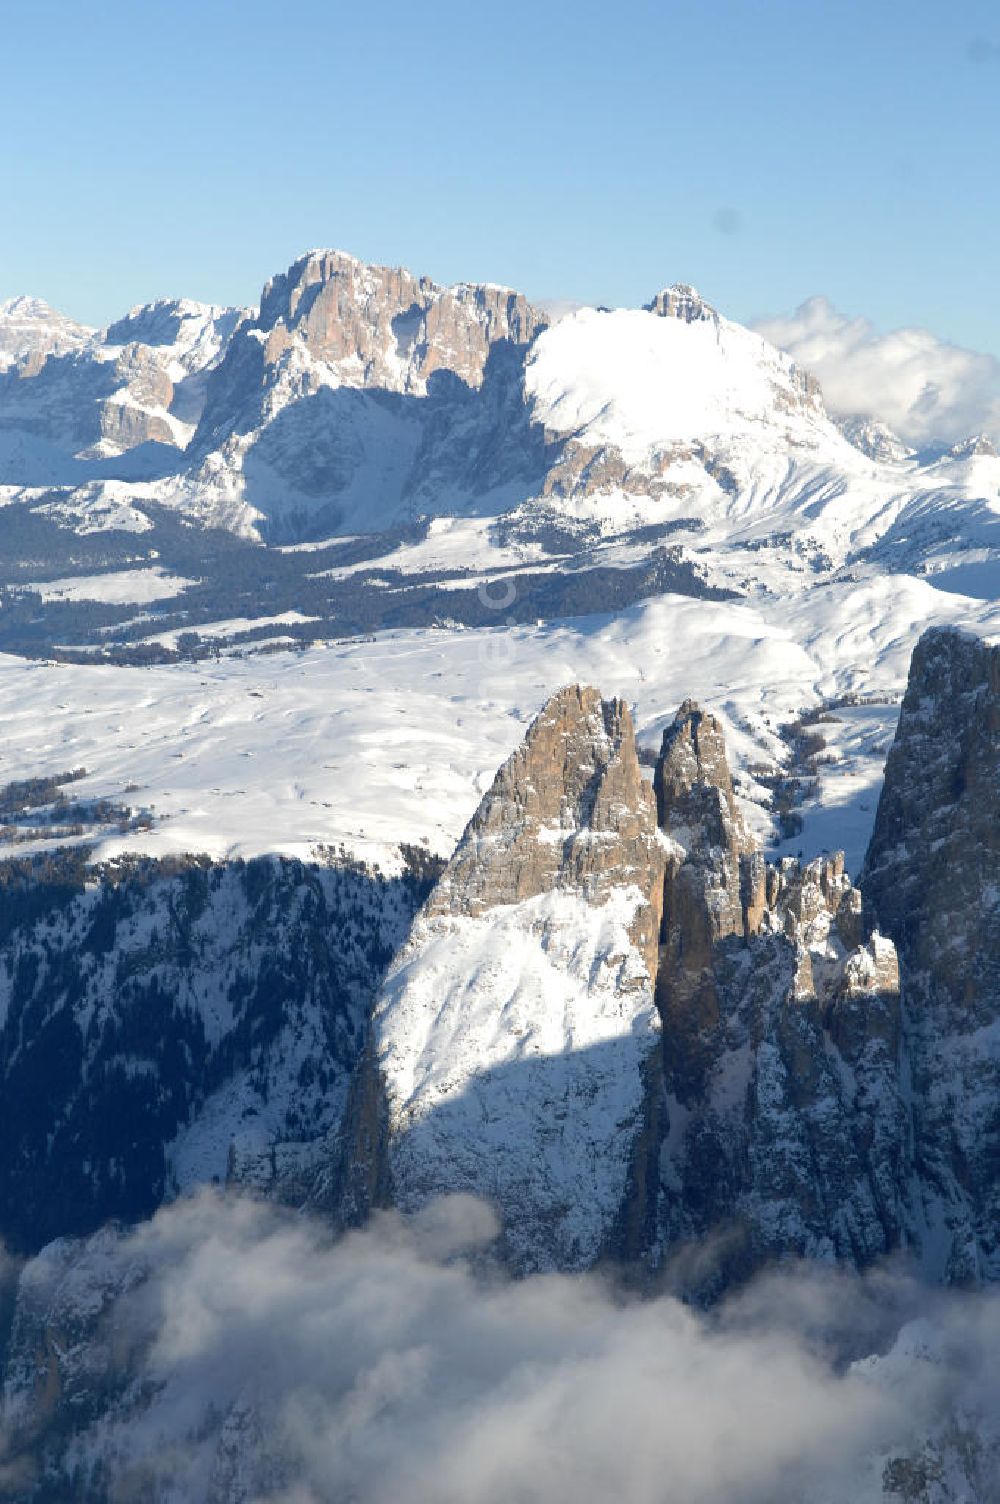 SEIS von oben - Winterlich verschneite Seiser Alm mit dem Schlern Gebirgsmassiv der Dolomiten